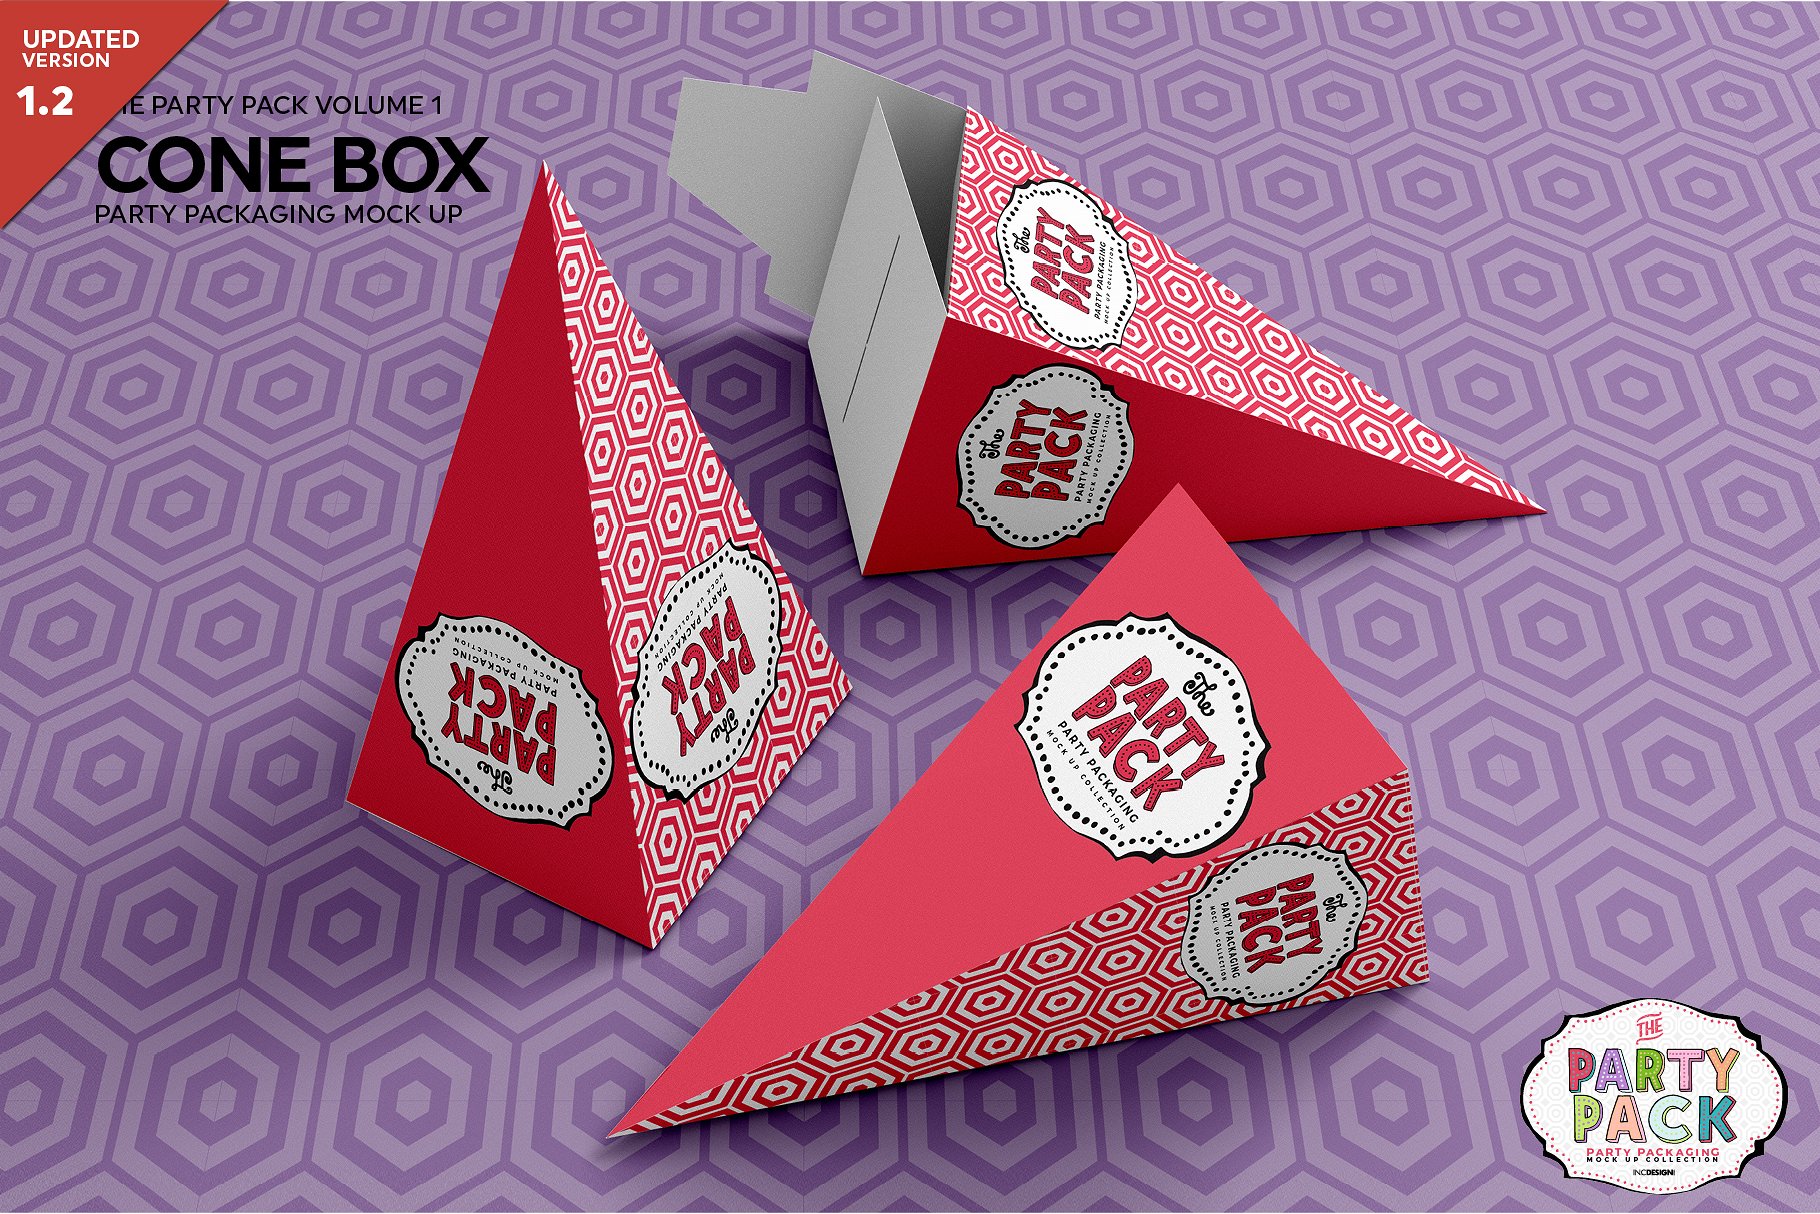 锥形盒子包装展示样机 Cone Box Packaging Mockup [psd]插图